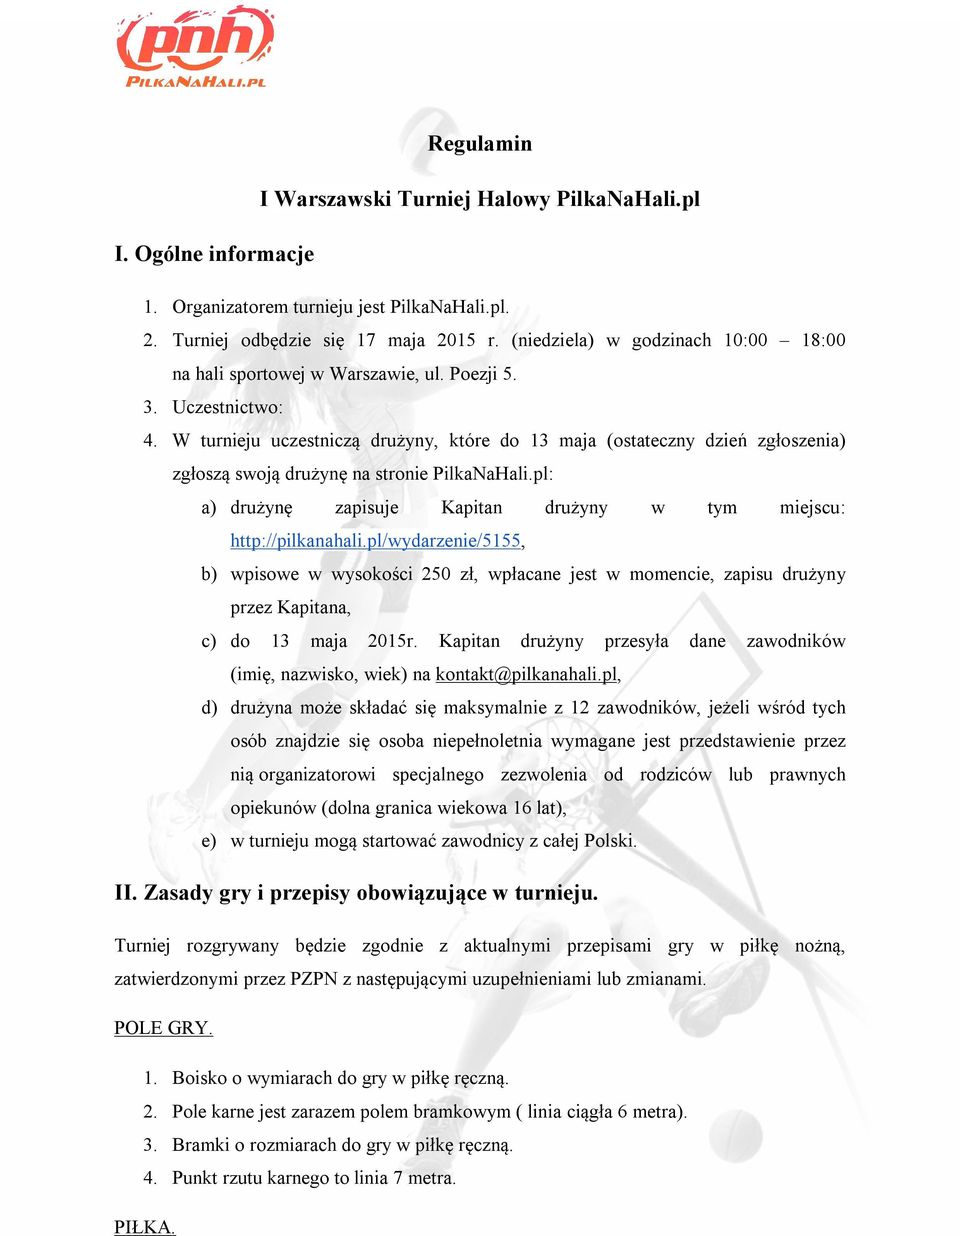 W turnieju uczestniczą drużyny, które do 13 maja (ostateczny dzień zgłoszenia) zgłoszą swoją drużynę na stronie PilkaNaHali.pl: a) drużynę zapisuje Kapitan drużyny w tym miejscu: http://pilkanahali.